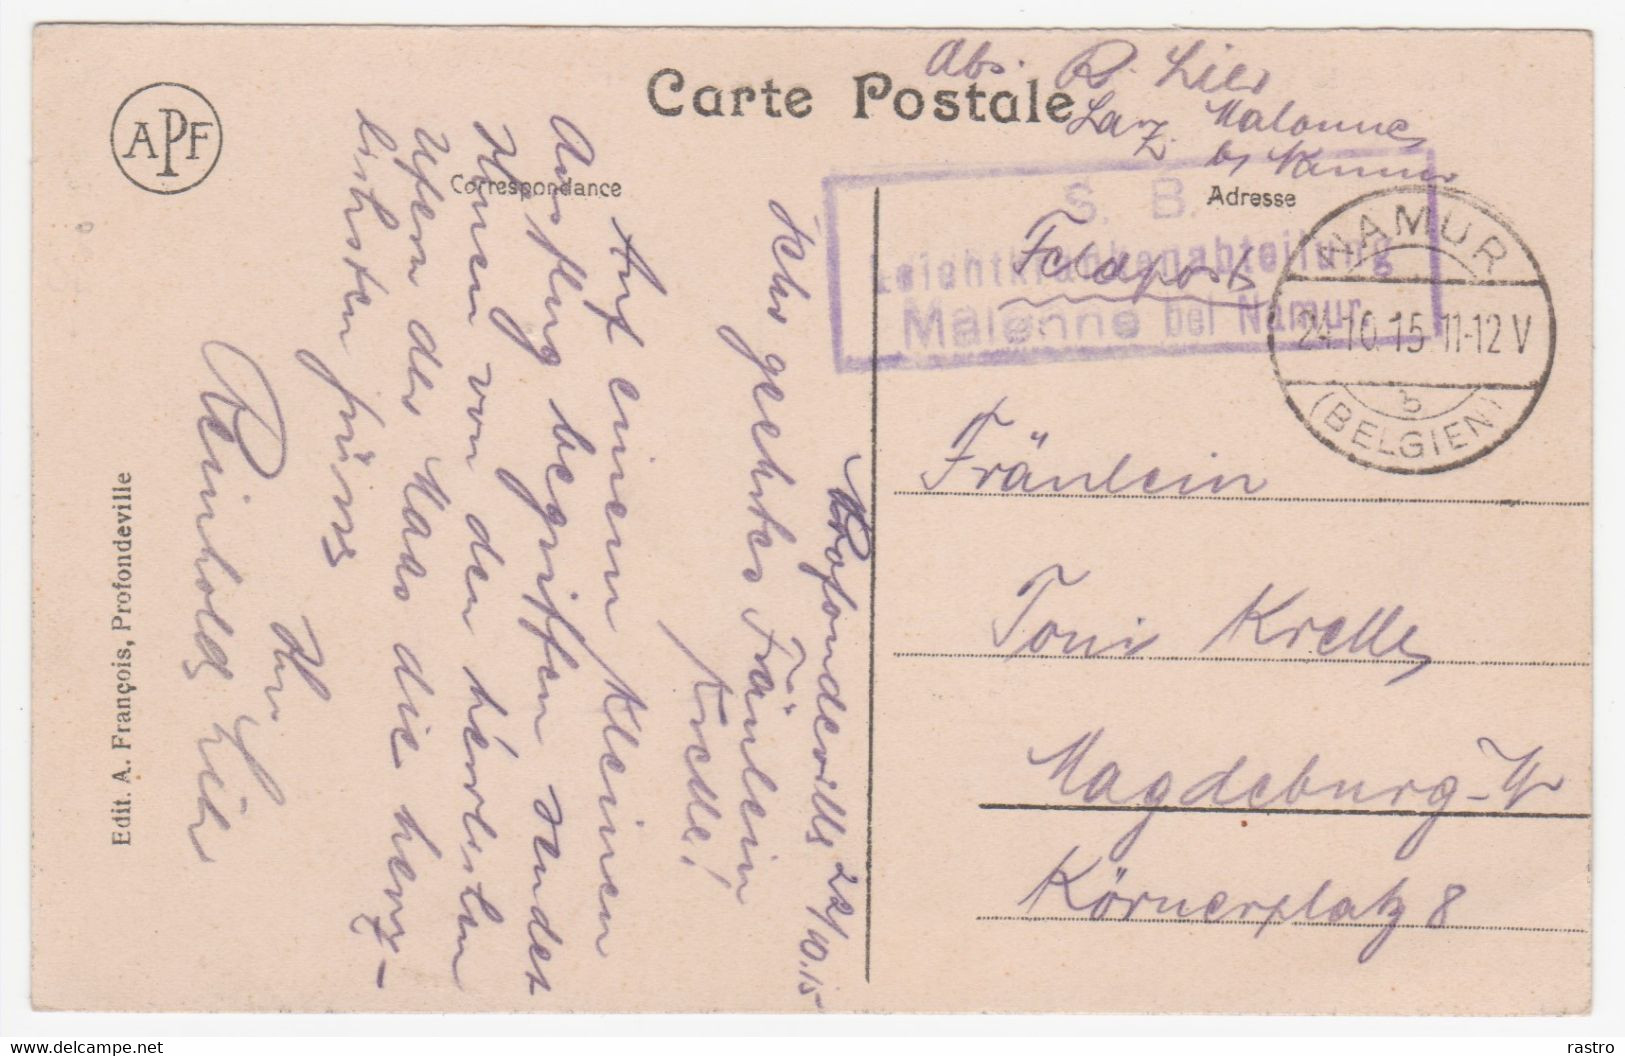 Carte-vue (Profondeville) En Franchise "Feldpost" O D'occup. Libramont + Cachet Service De Santé Vers  Magdebourg (1915) - Zonder Portkosten